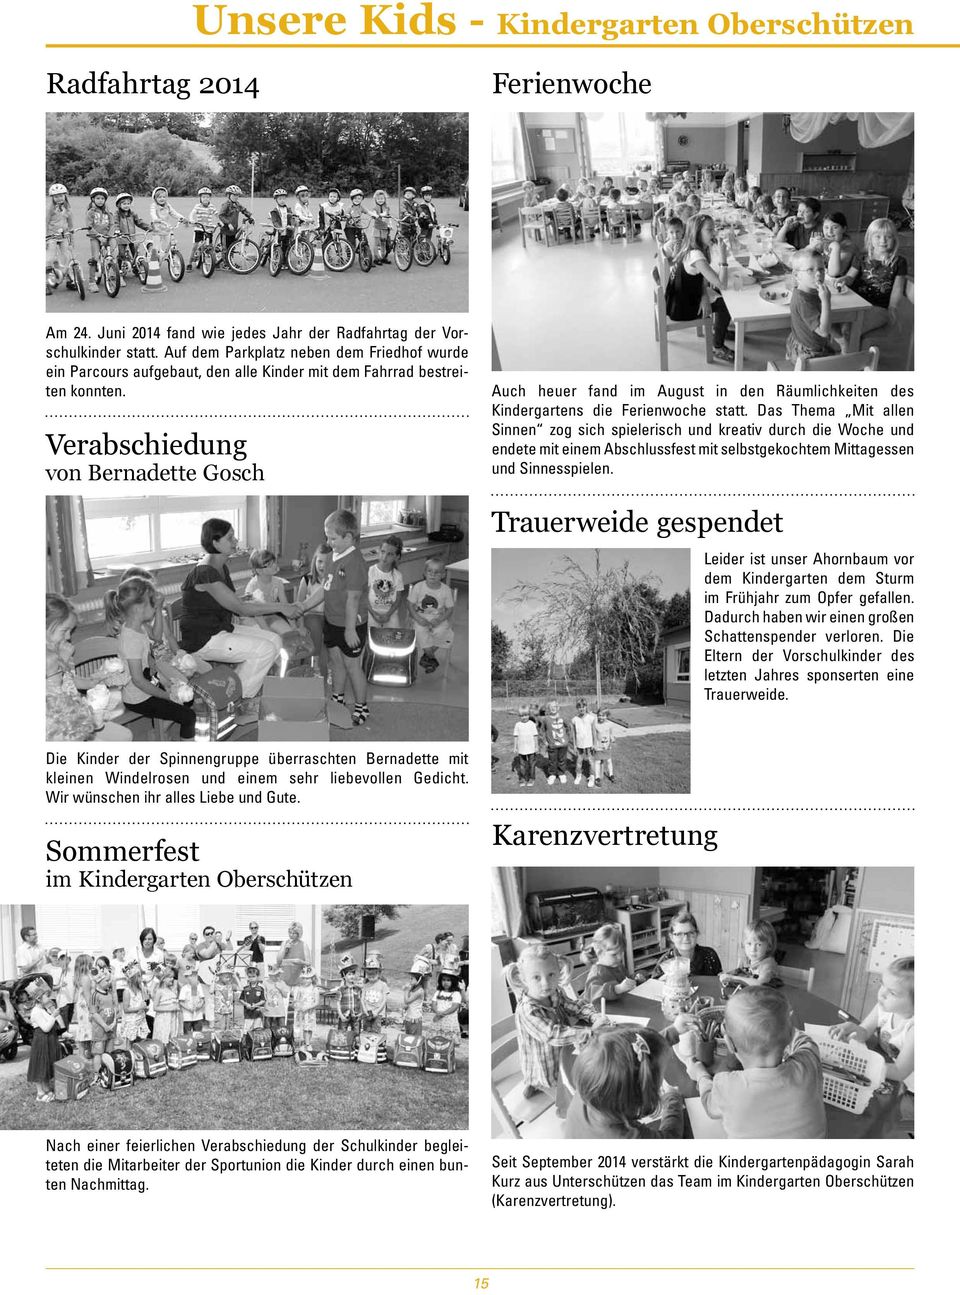 Verabschiedung von Bernadette Gosch Auch heuer fand im August in den Räumlichkeiten des Kindergartens die Ferienwoche statt.